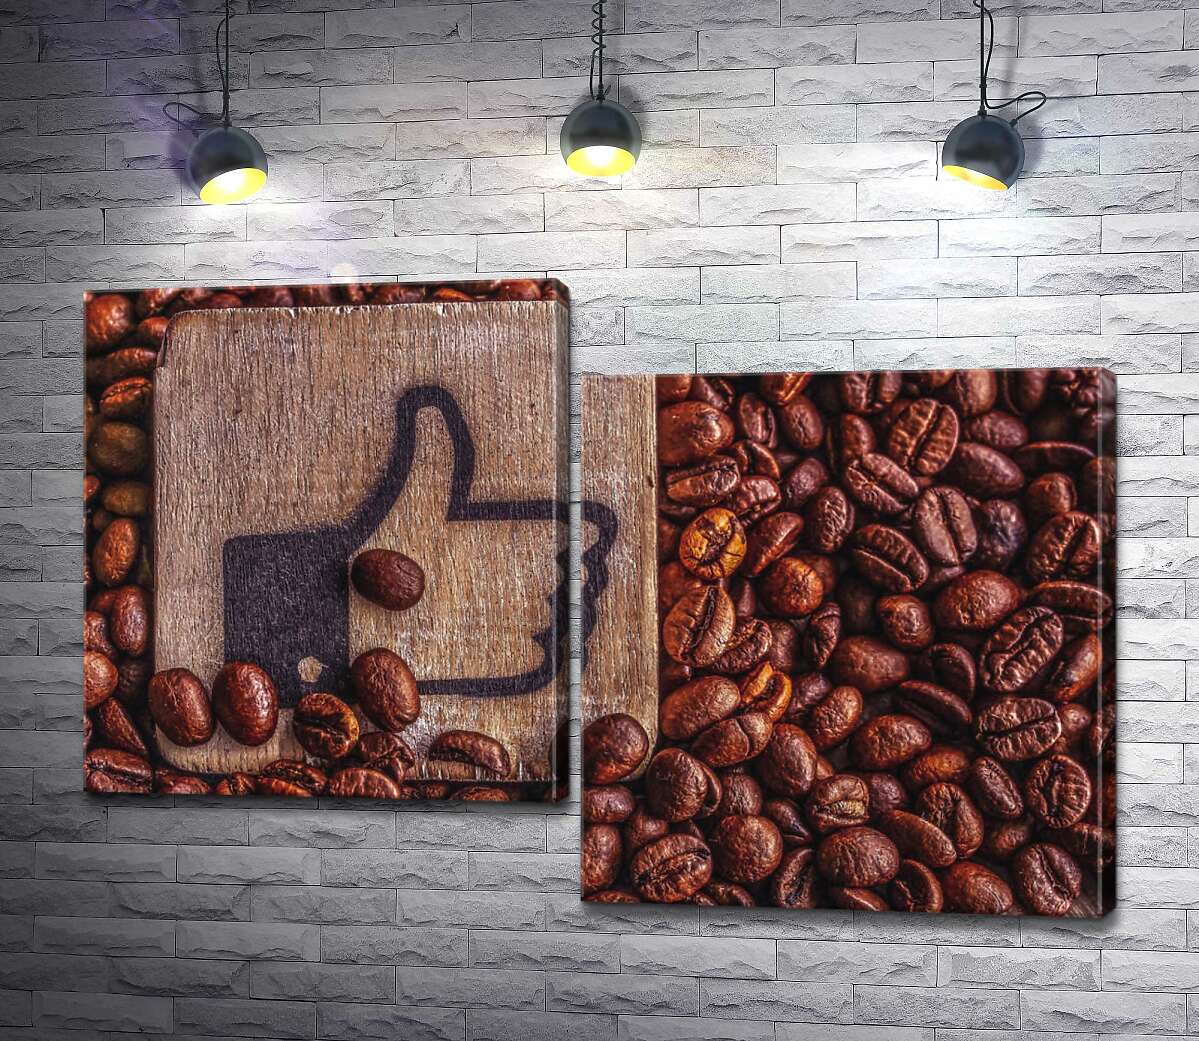 

Модульная картина ArtPoster Деревянный знак "Like" среди аромата кофейных зерен 130x88 см Модуль №5